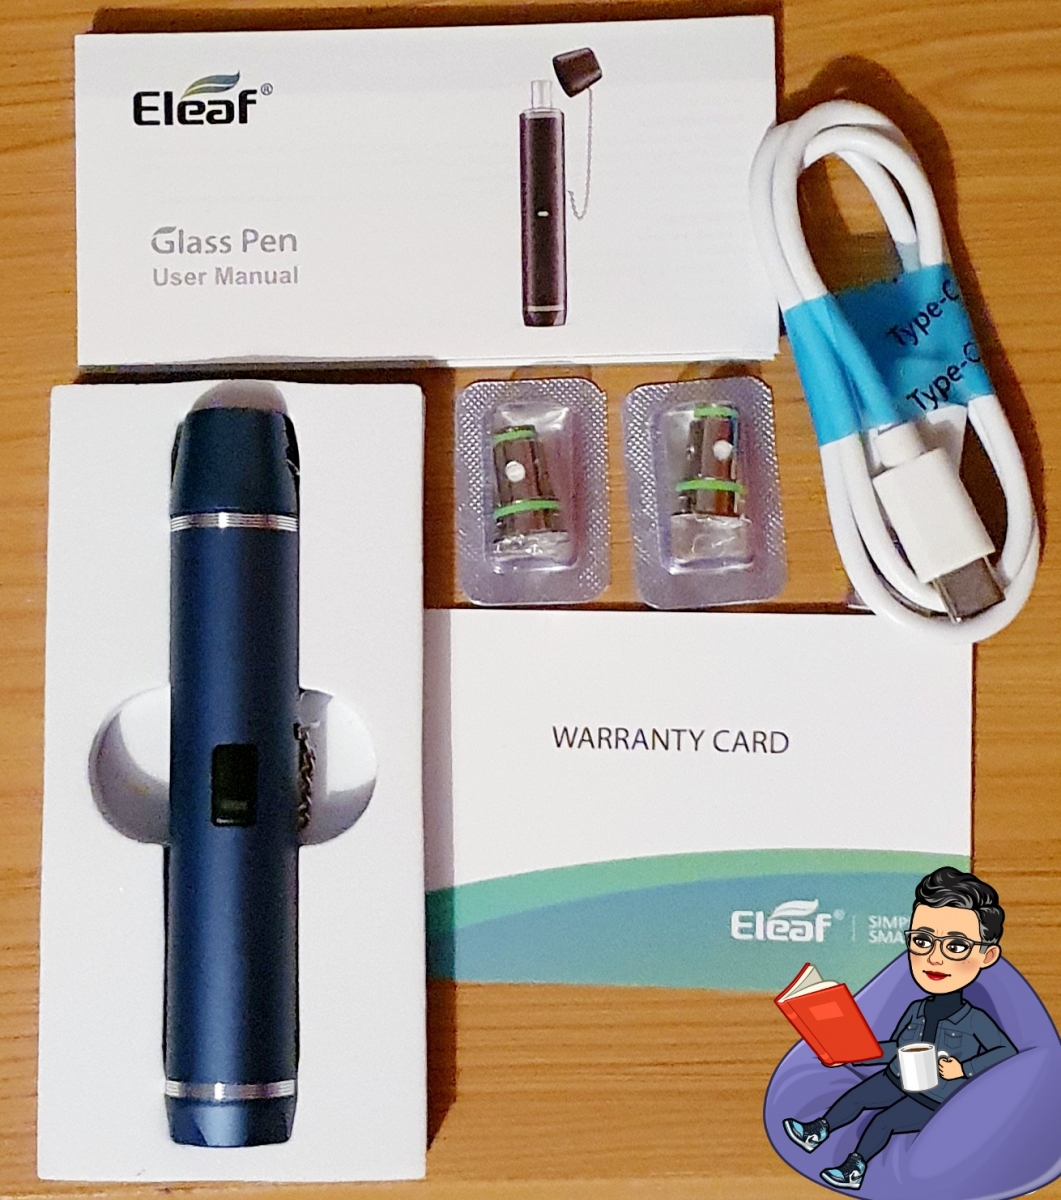 Eleaf Glass Pen Kit contents